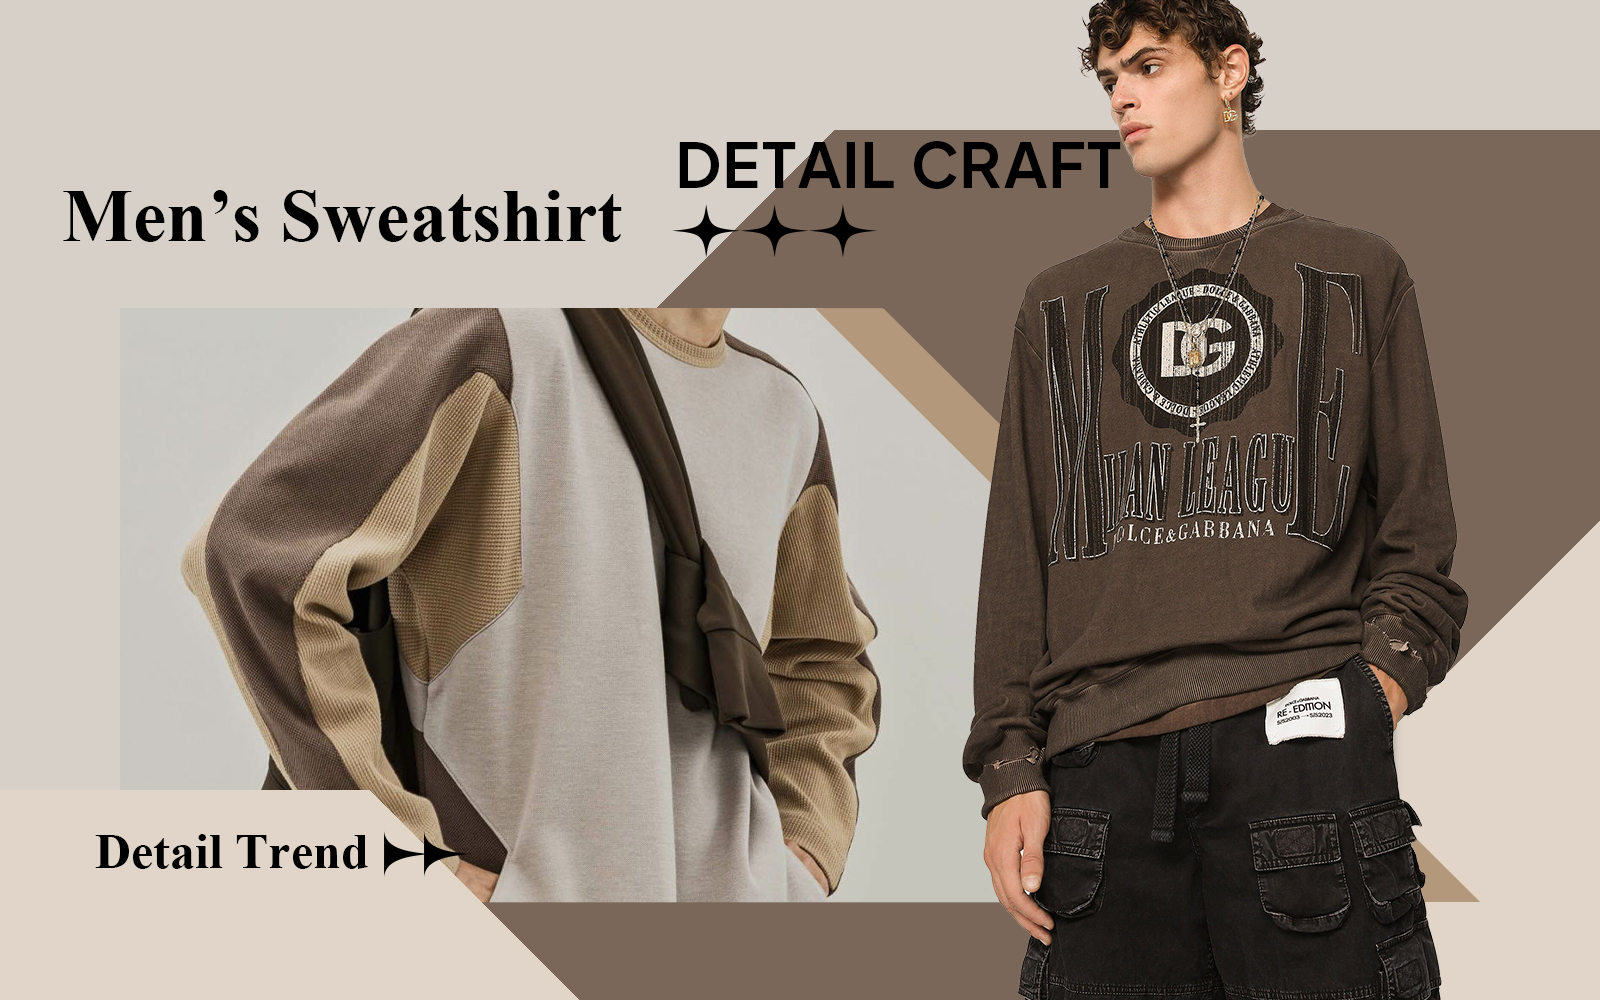 The Detail & Craft Trend for Men's Sweatshirt